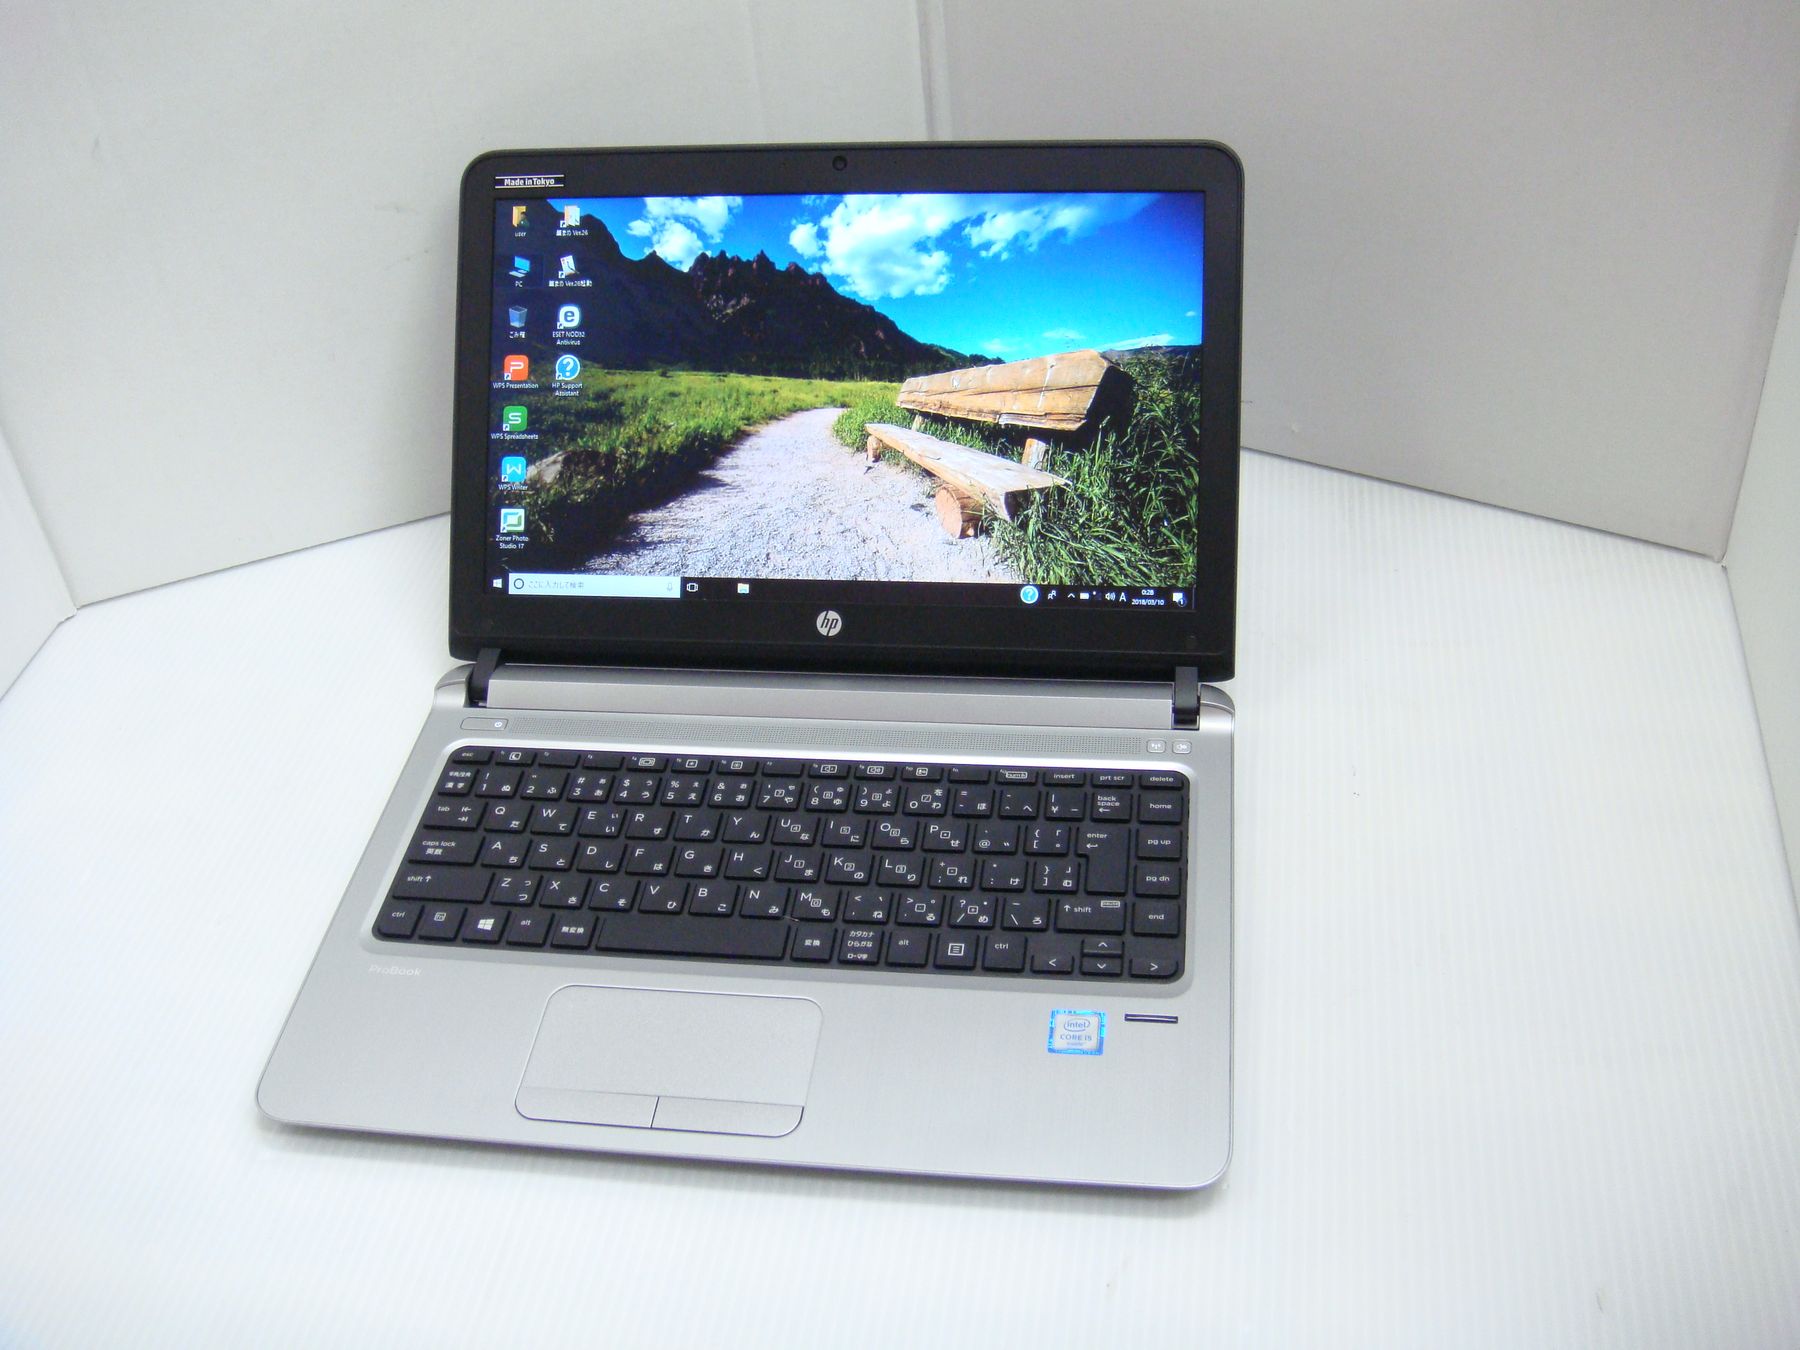 【持ち運びに便利】【スタイリッシュノート】【小型】【軽量】 HP ProBook 430 G3 第6世代 Core i5 6200U/2.30GHz 4GB HDD250GB Windows10 64bit WPSOffice 13.3インチ HD カメラ 無線LAN パソコン モバイルノート ノートパソコン PC Notebook